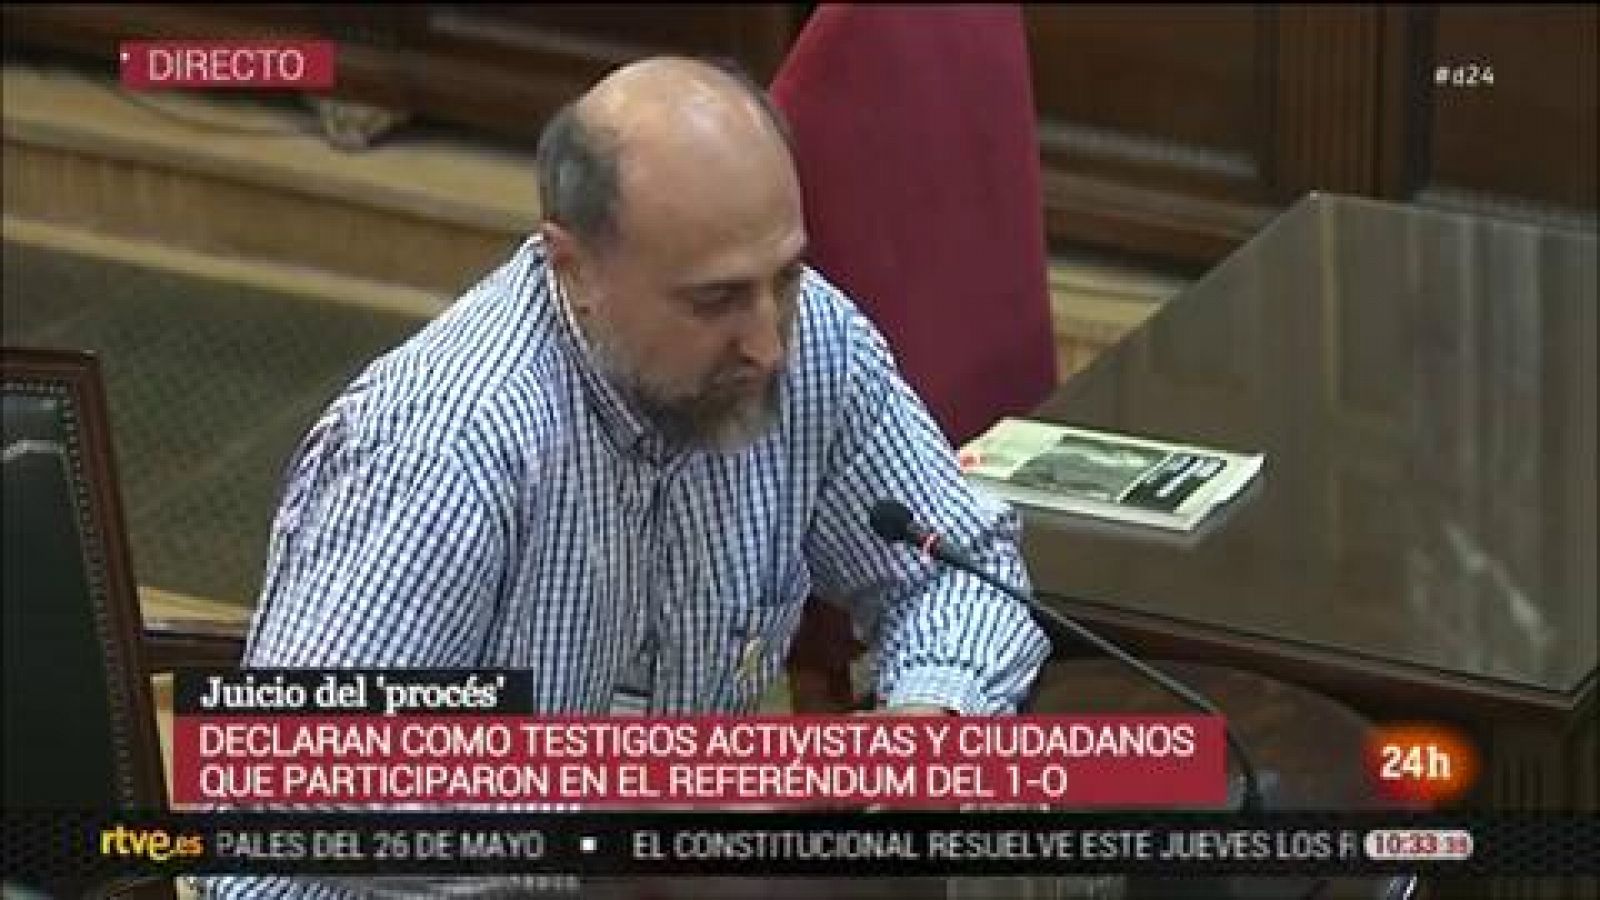 Juicio procés: Un testigo declara que los mossos "entendieron que no era necesario forzar una situación incómoda"